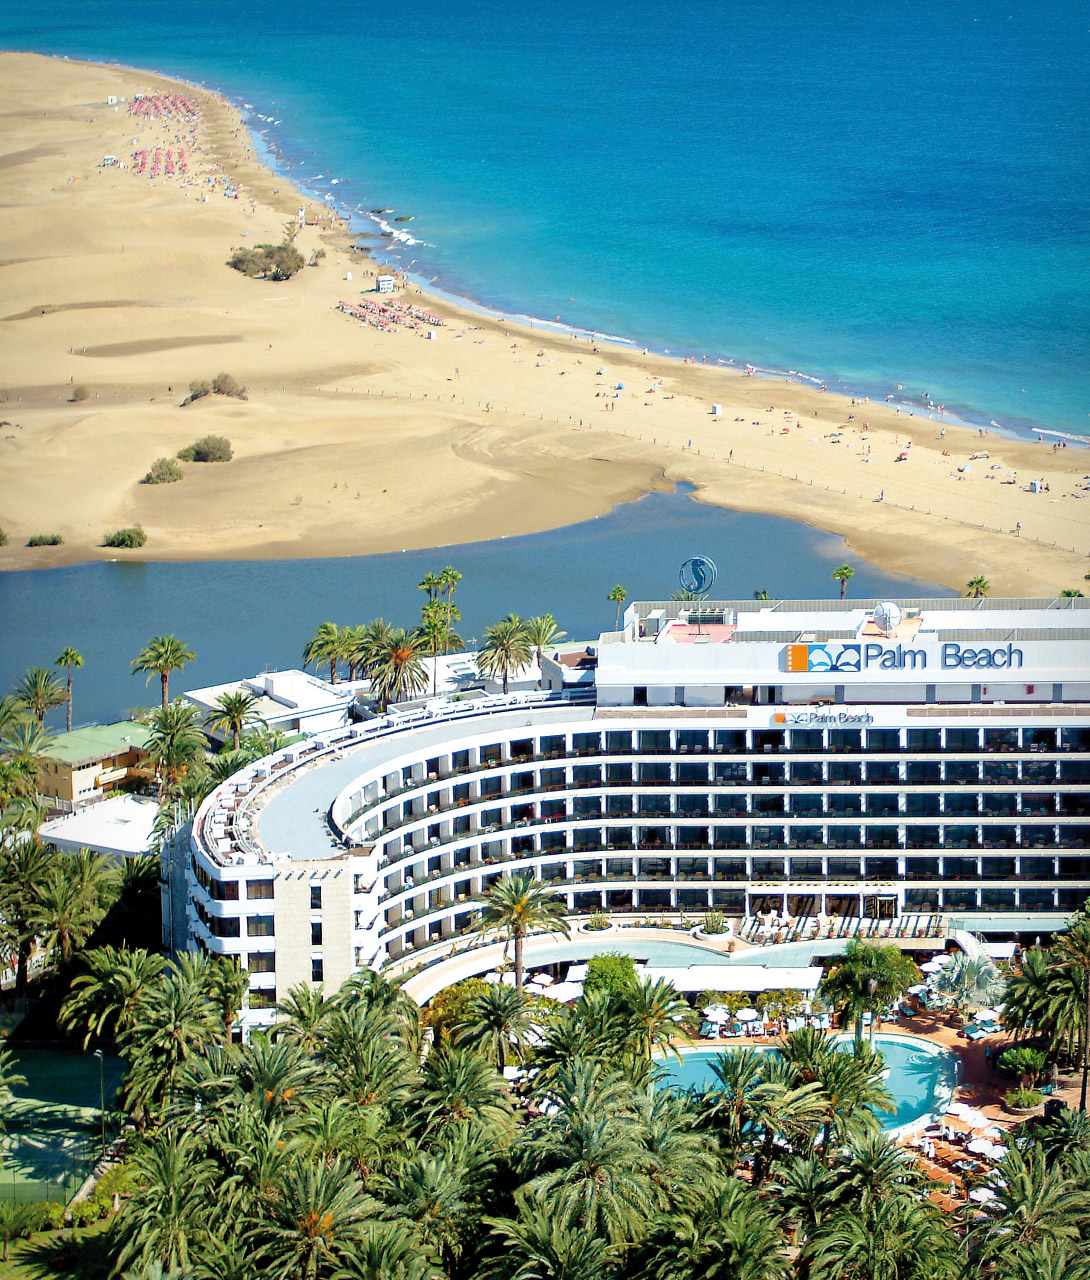 Seaside Palm Beach Aerial View Hotel A 01 X2